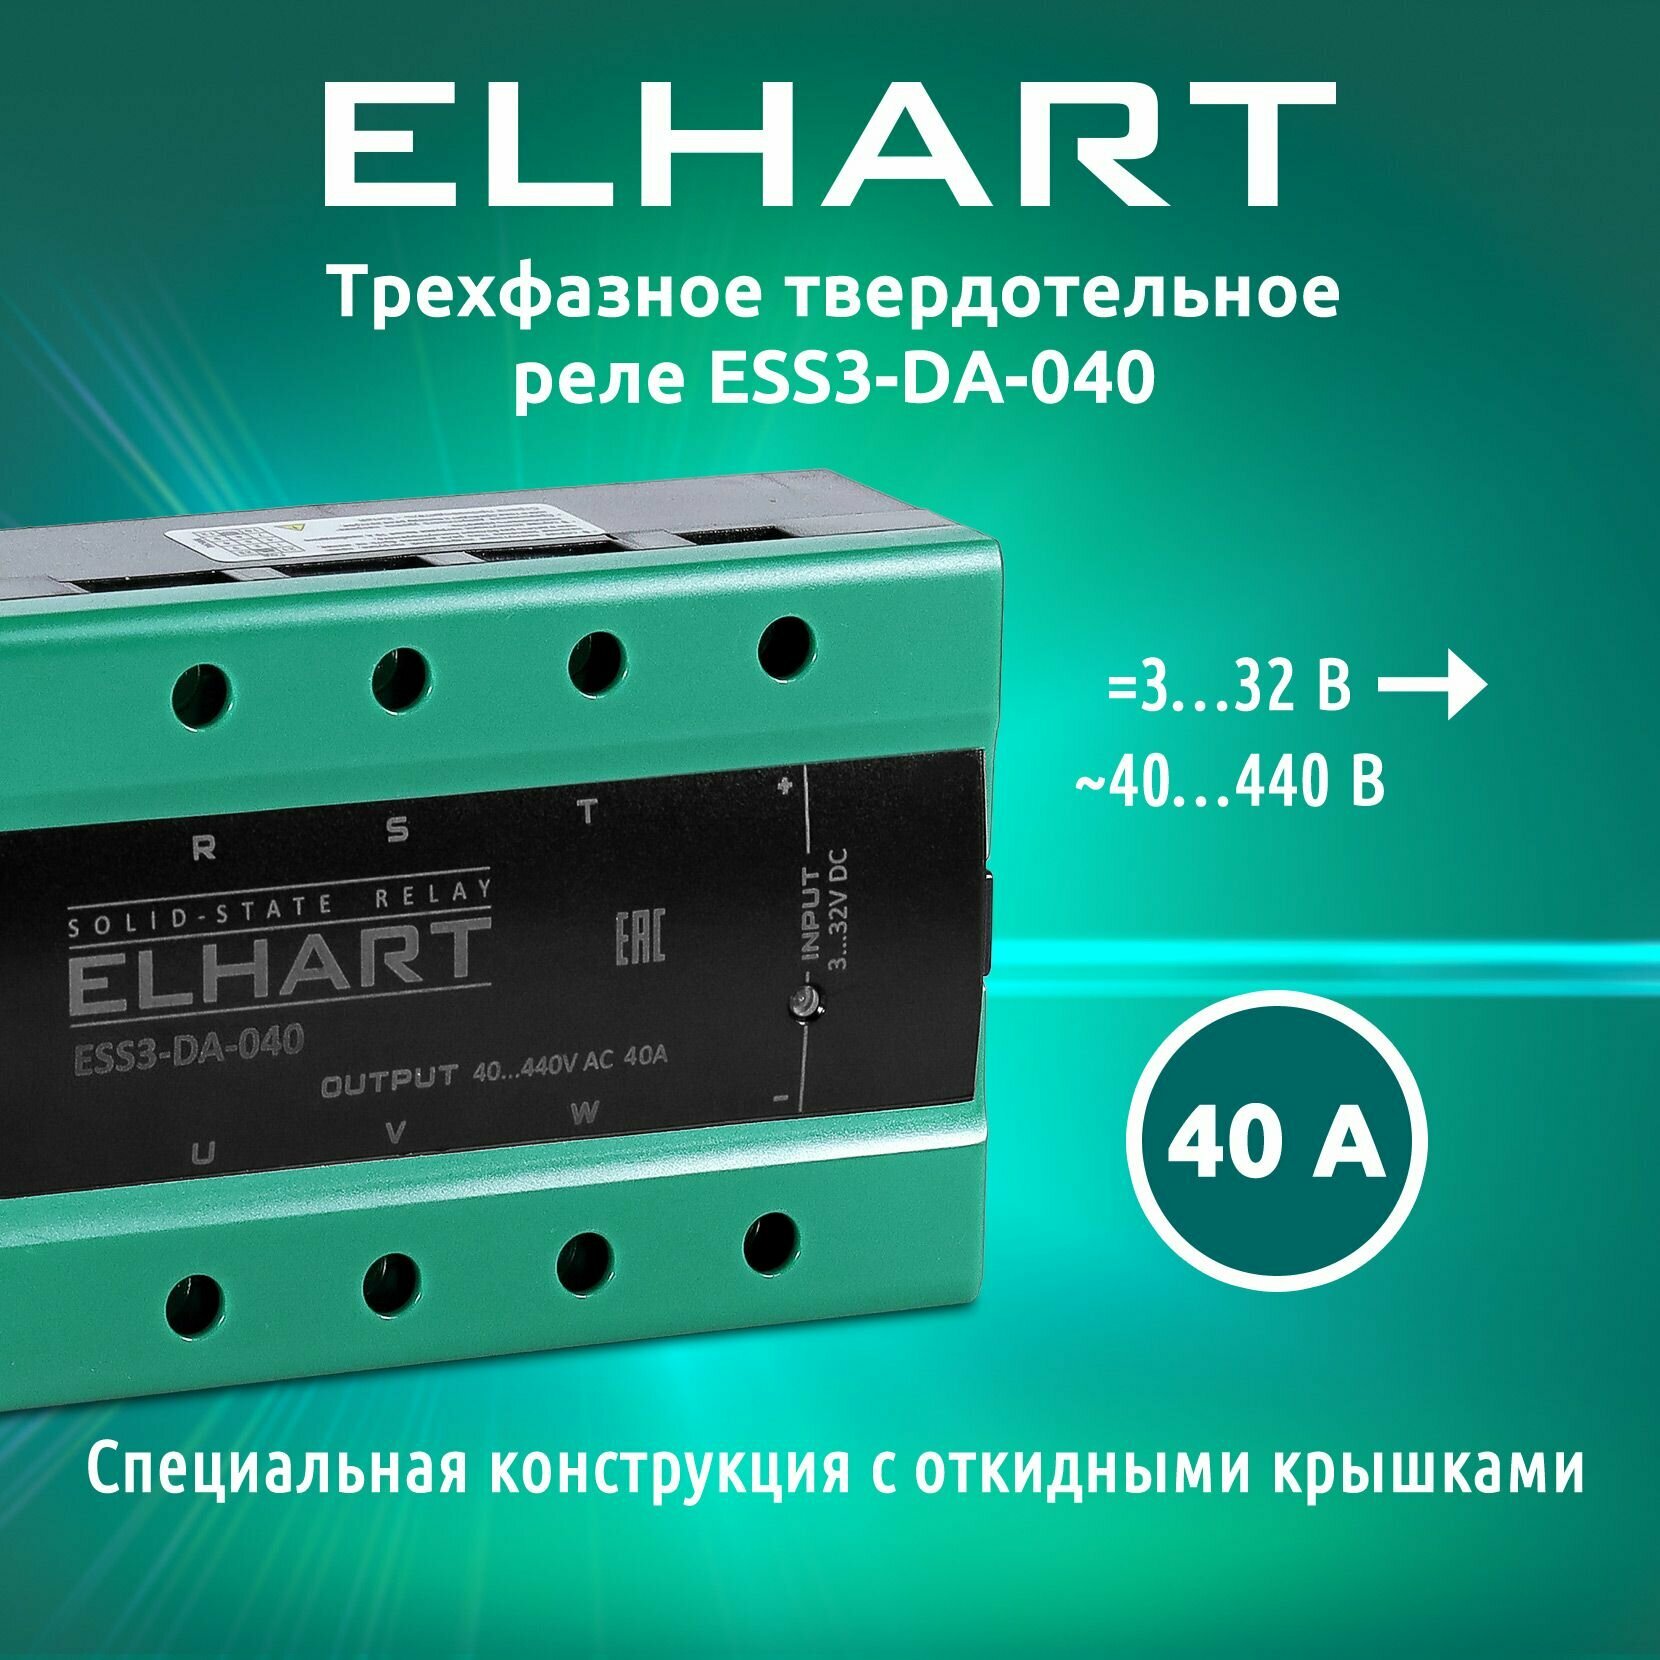 Трехфазное твердотельное реле ELHART ESS3-DA-040